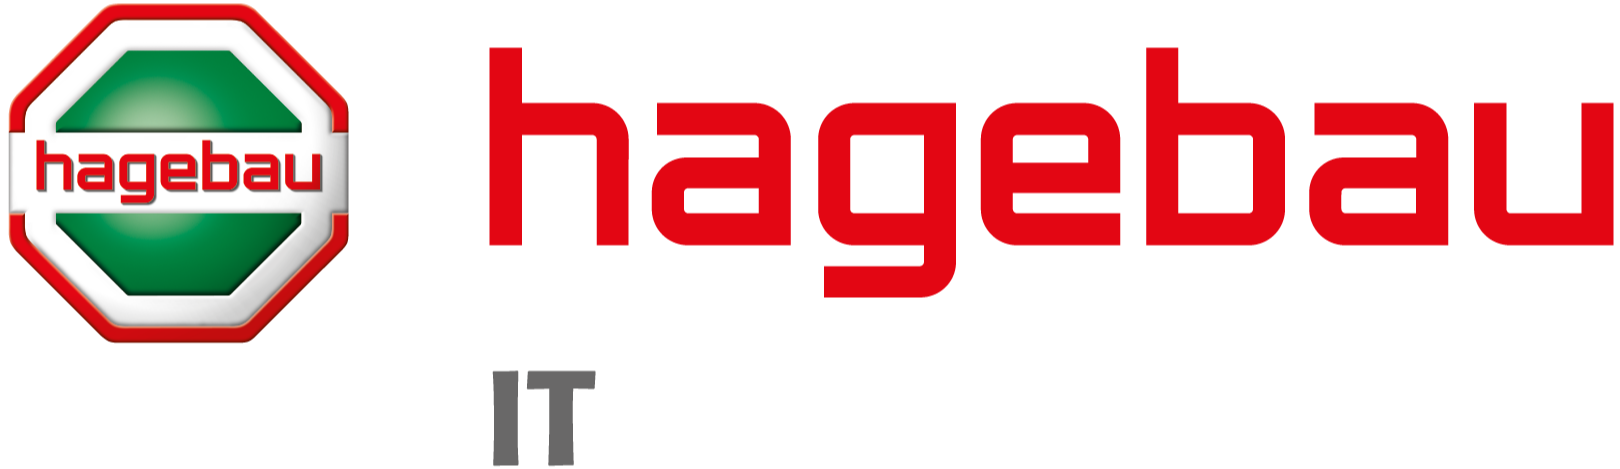 hagebau-it-logo-2-2